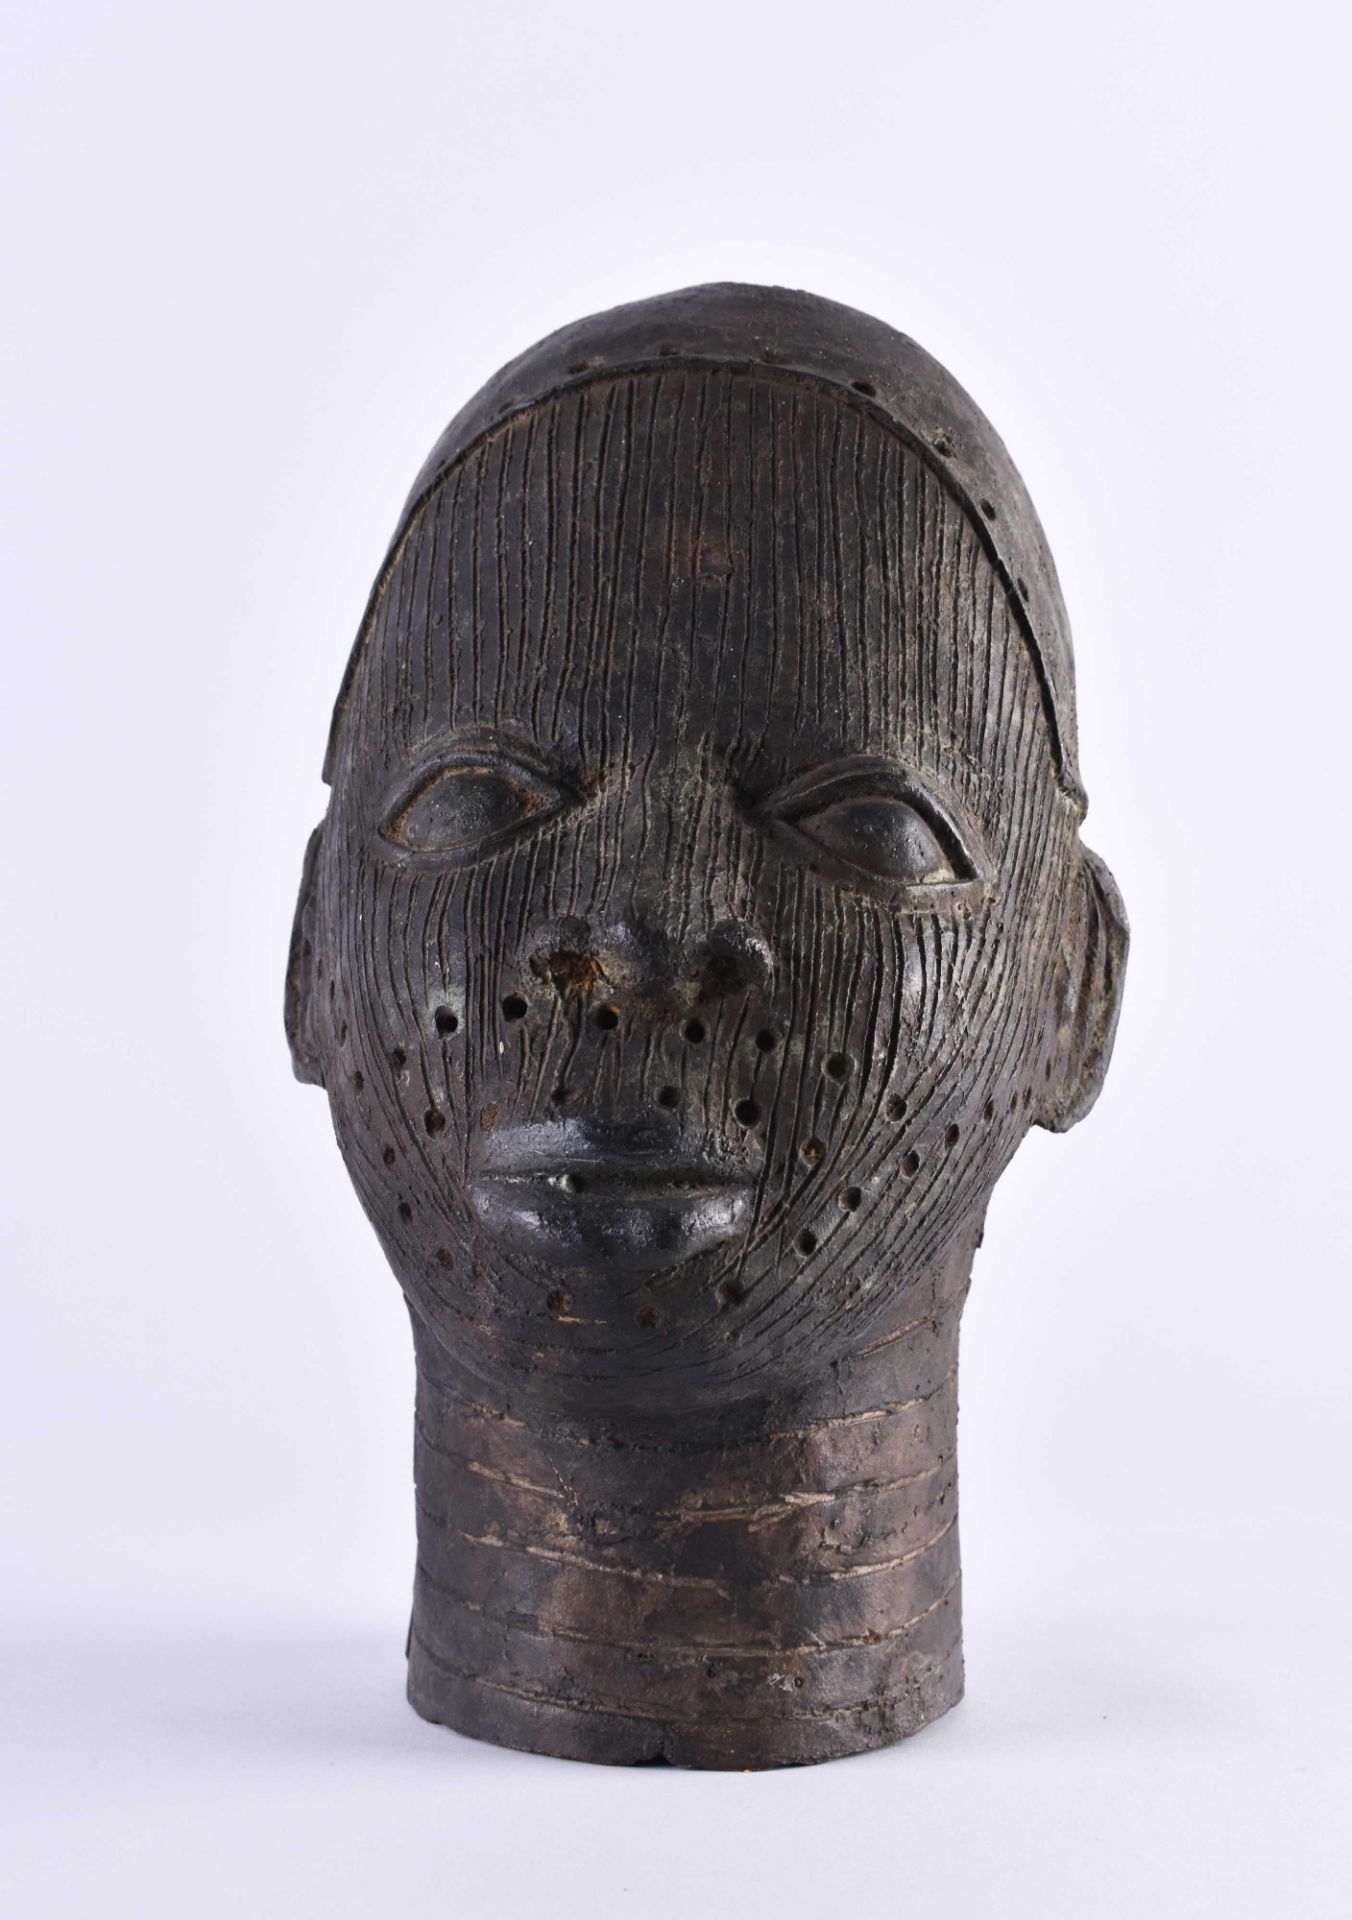 Niger/Benin bronze Africa